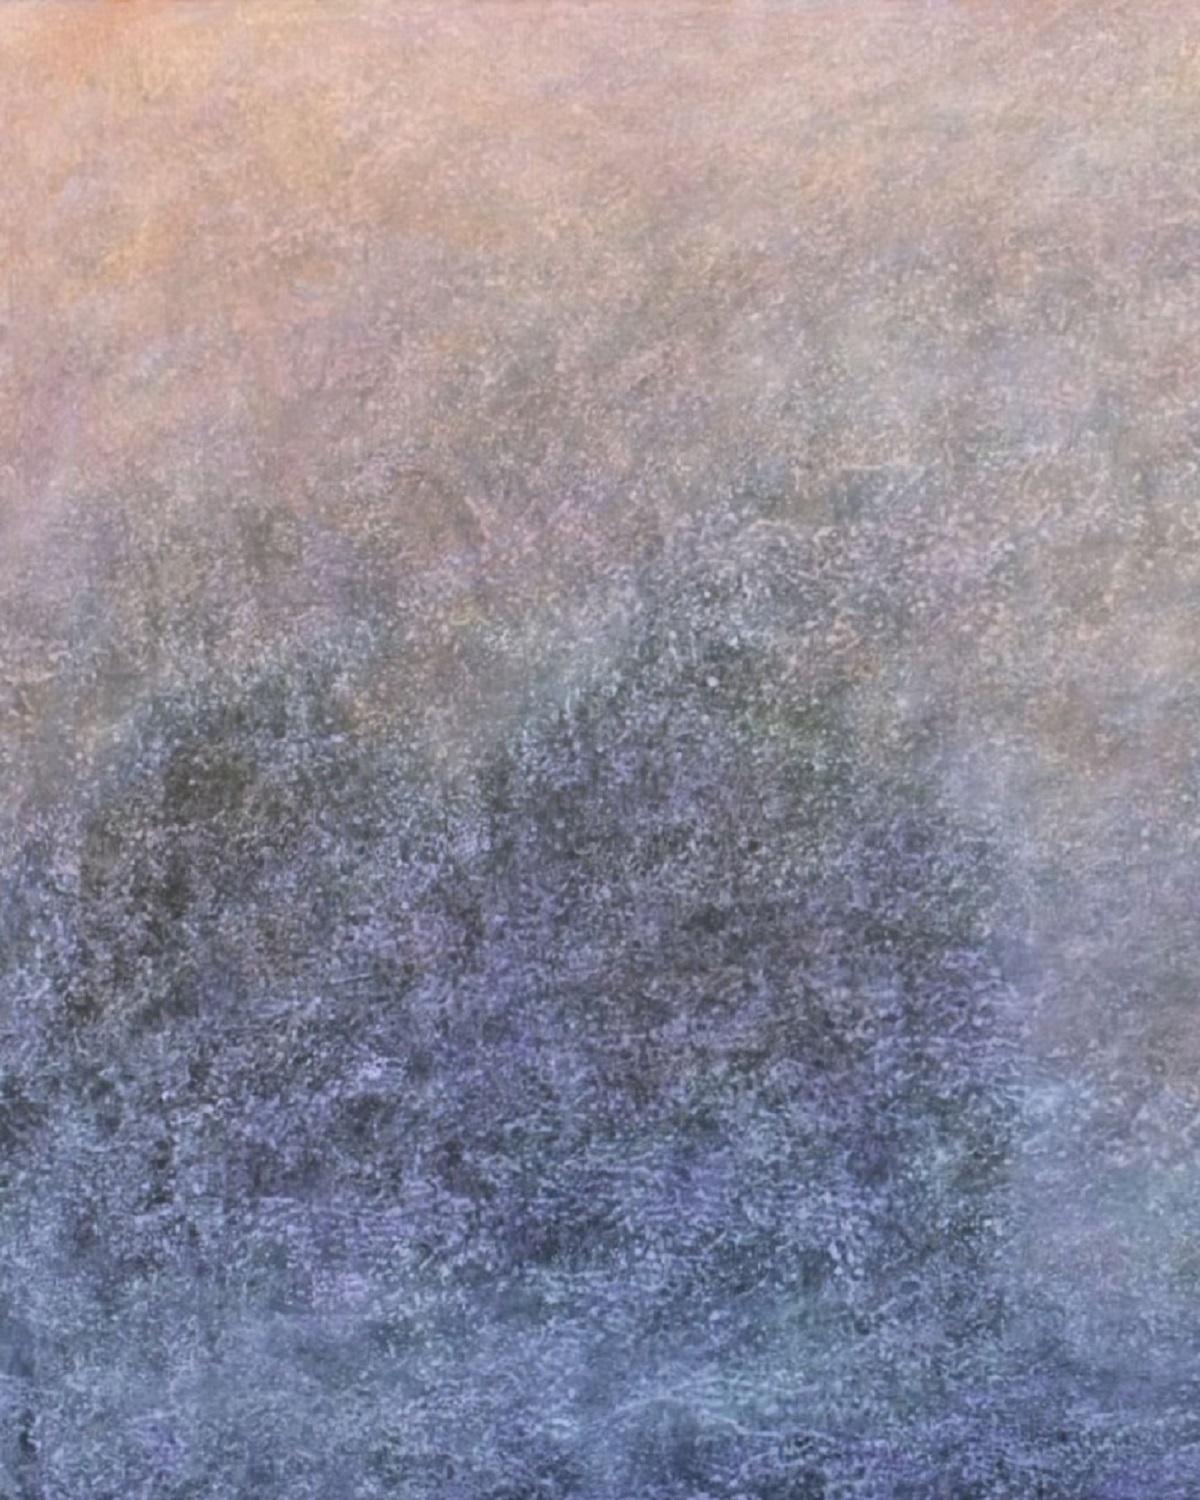 Melting of horizon - Acrylmalerei, Landschafts- und abstraktes Gemälde, Lila (Sonstige Kunststile), Painting, von Tomek Mistak